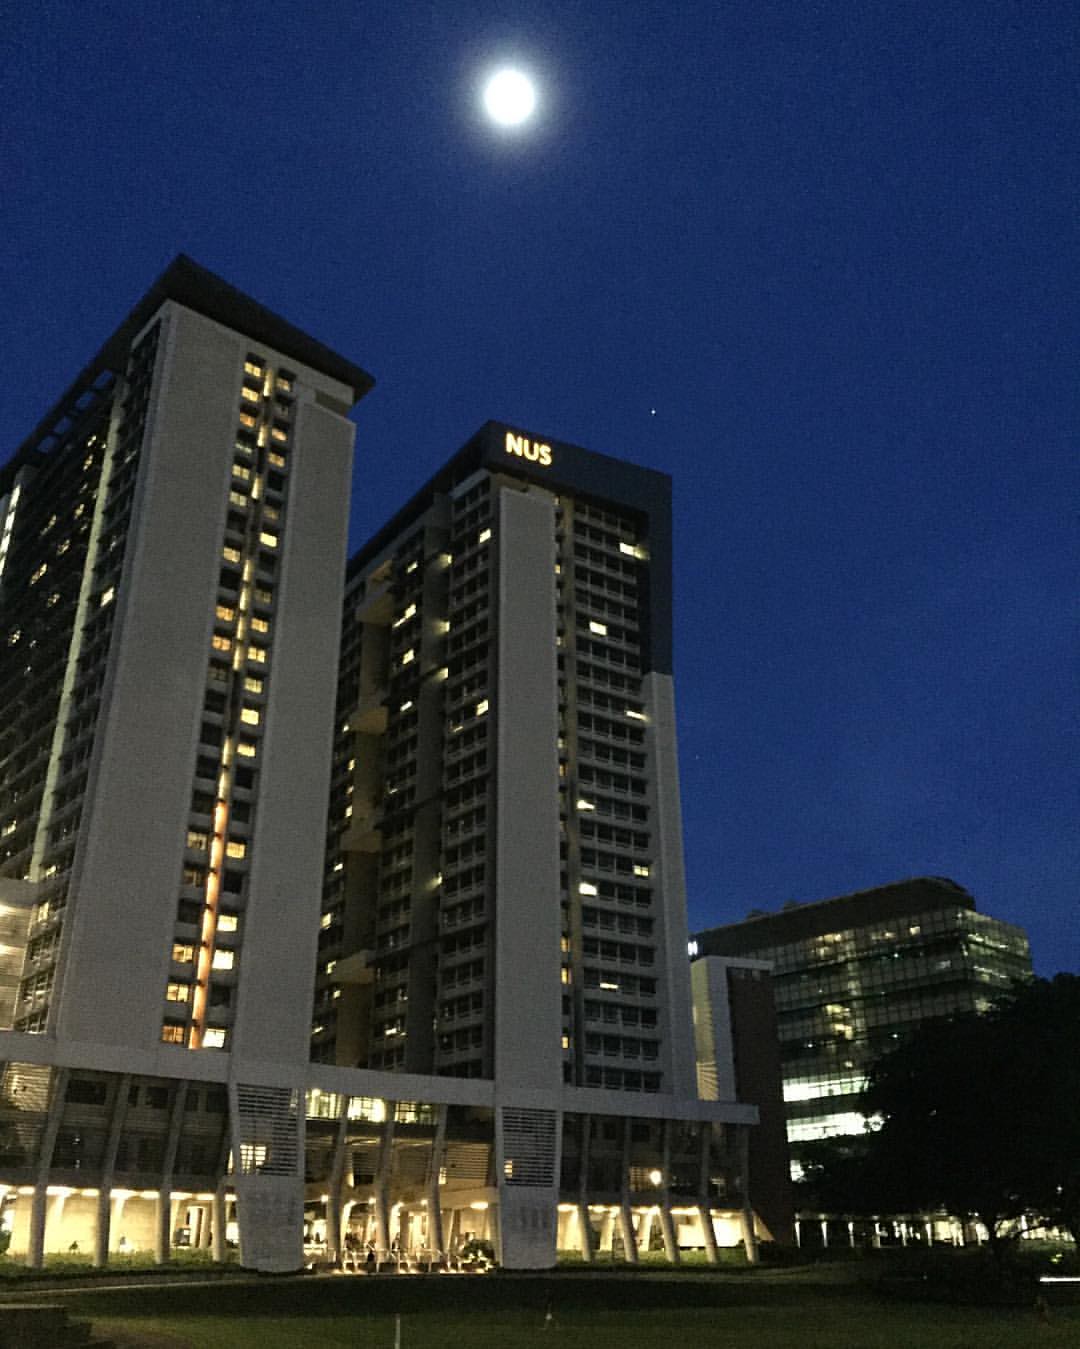 Big Moon over NUS U-Town.